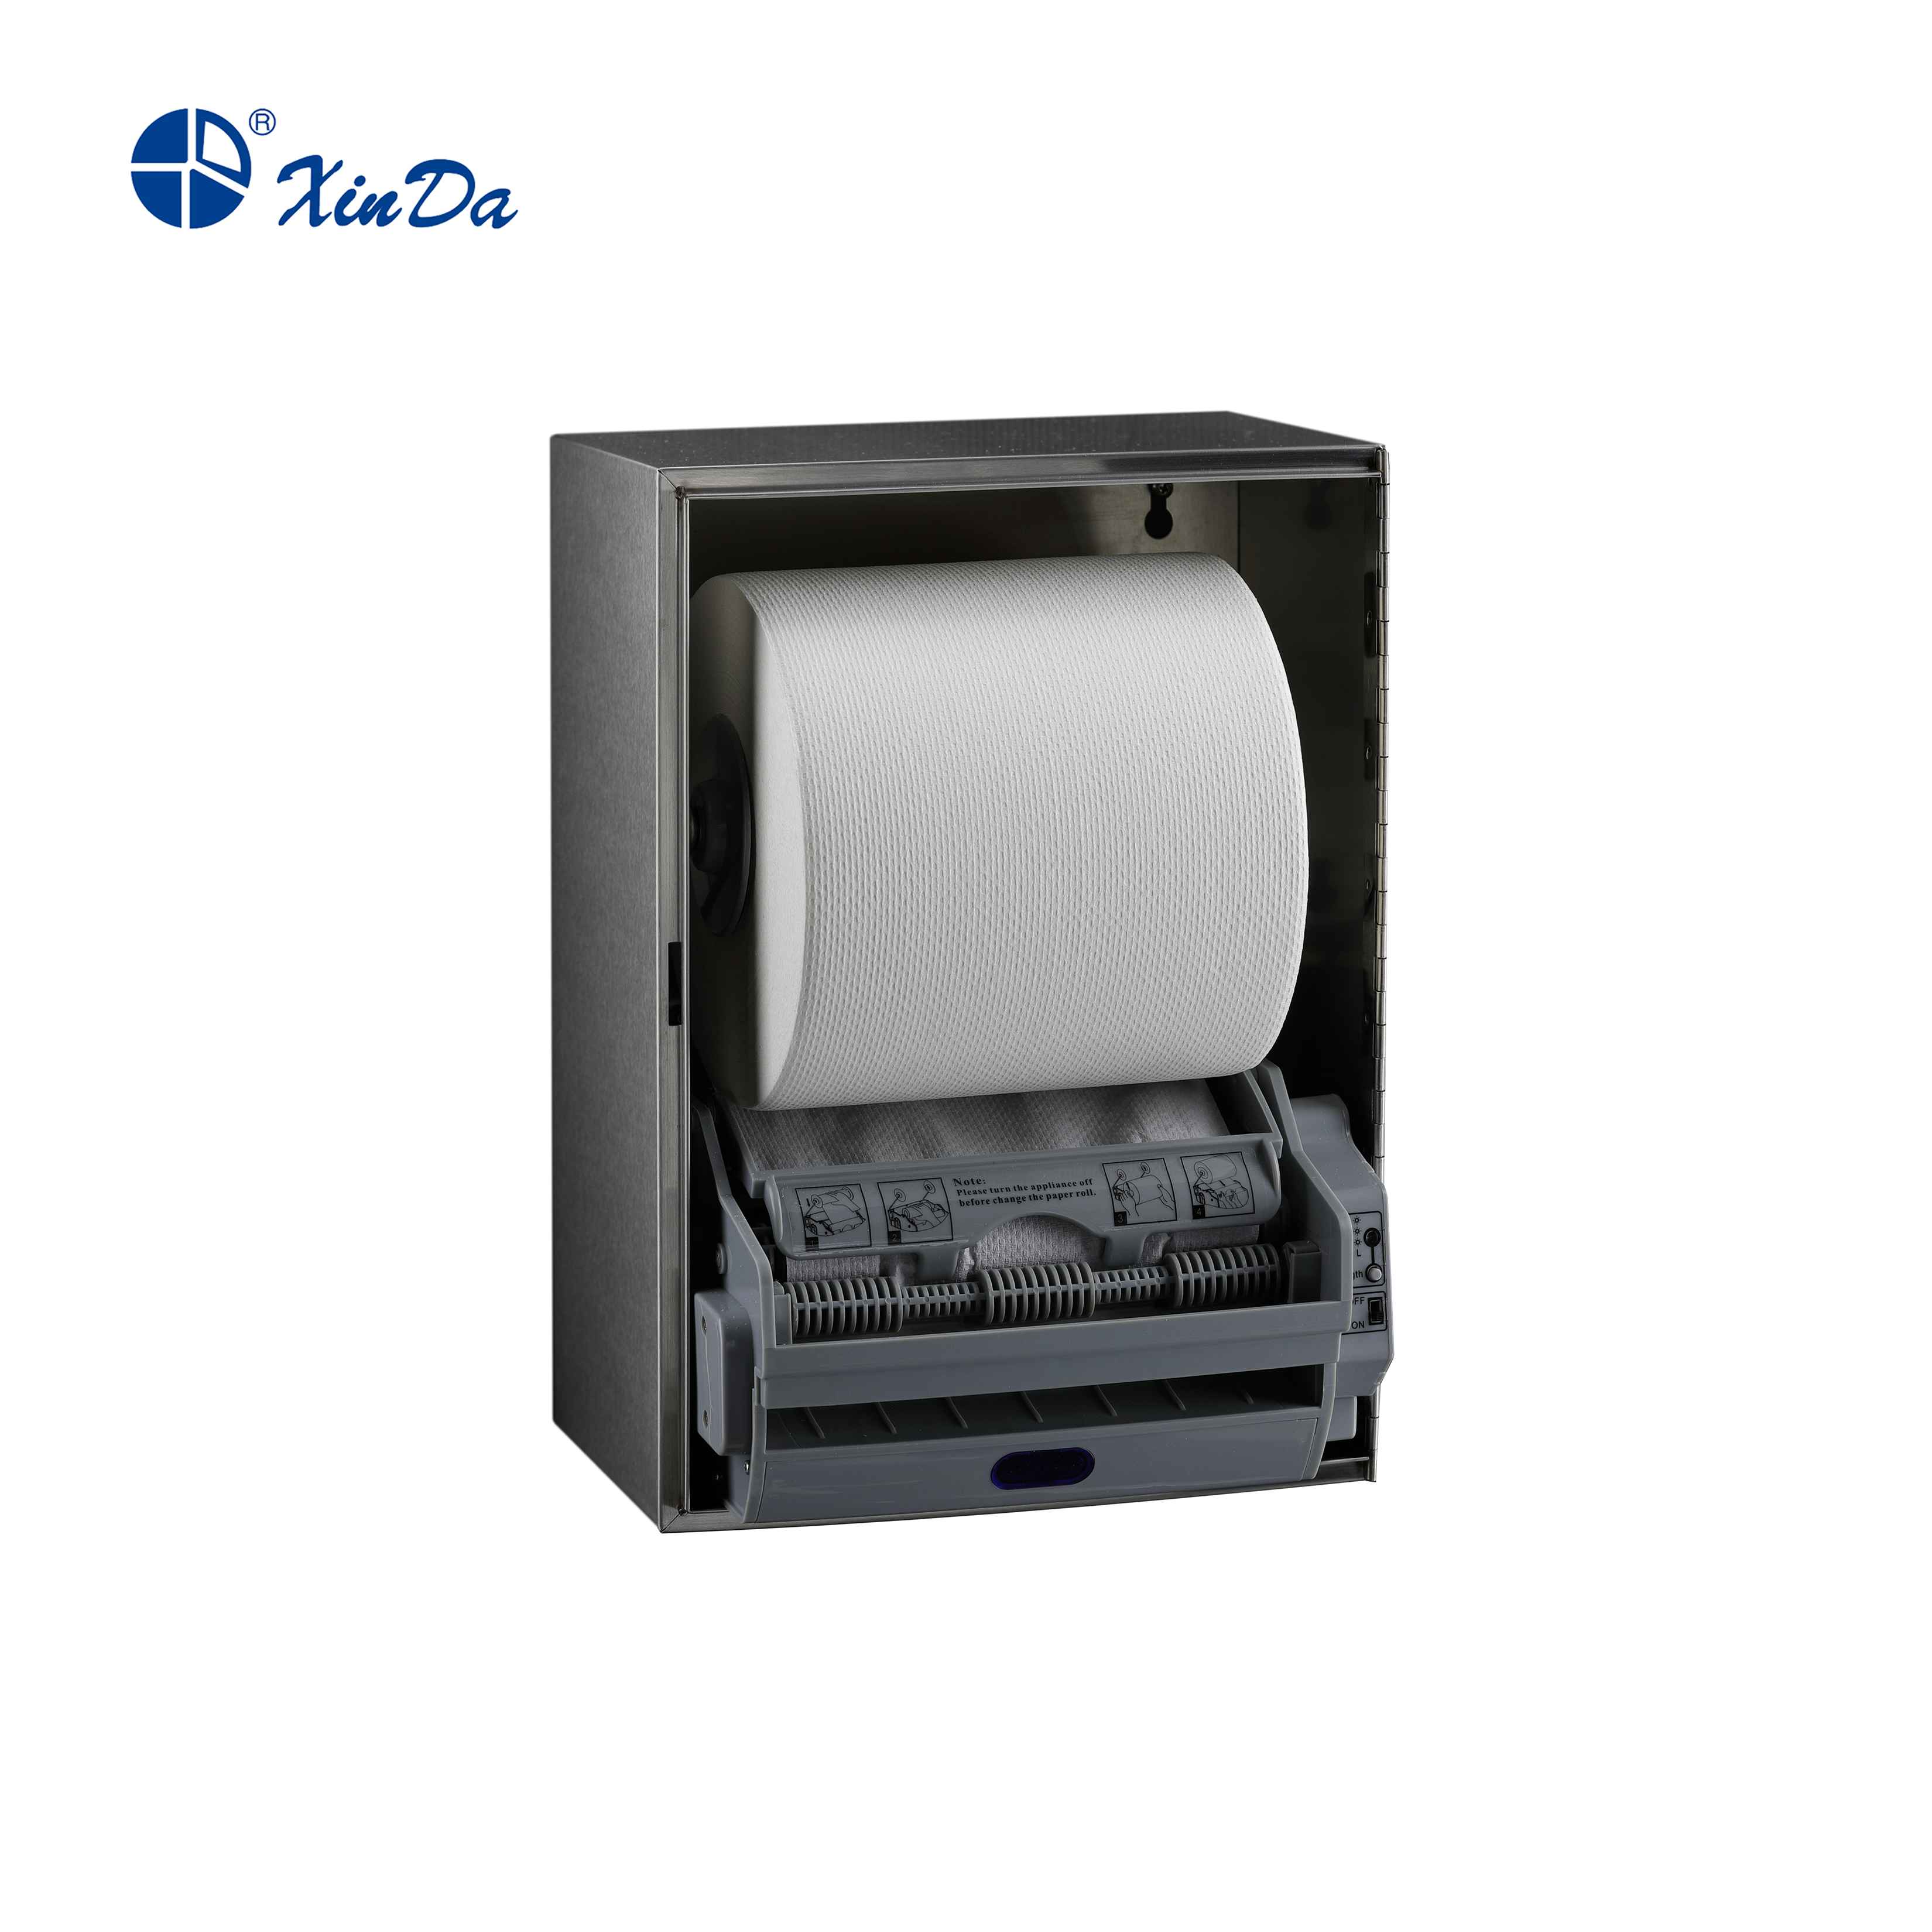 The XinDa CZQ20K Stainless Steel Hotel Bifold Toilet Tissue holder Toilet Seat Cover Dispenser Paper dispenser